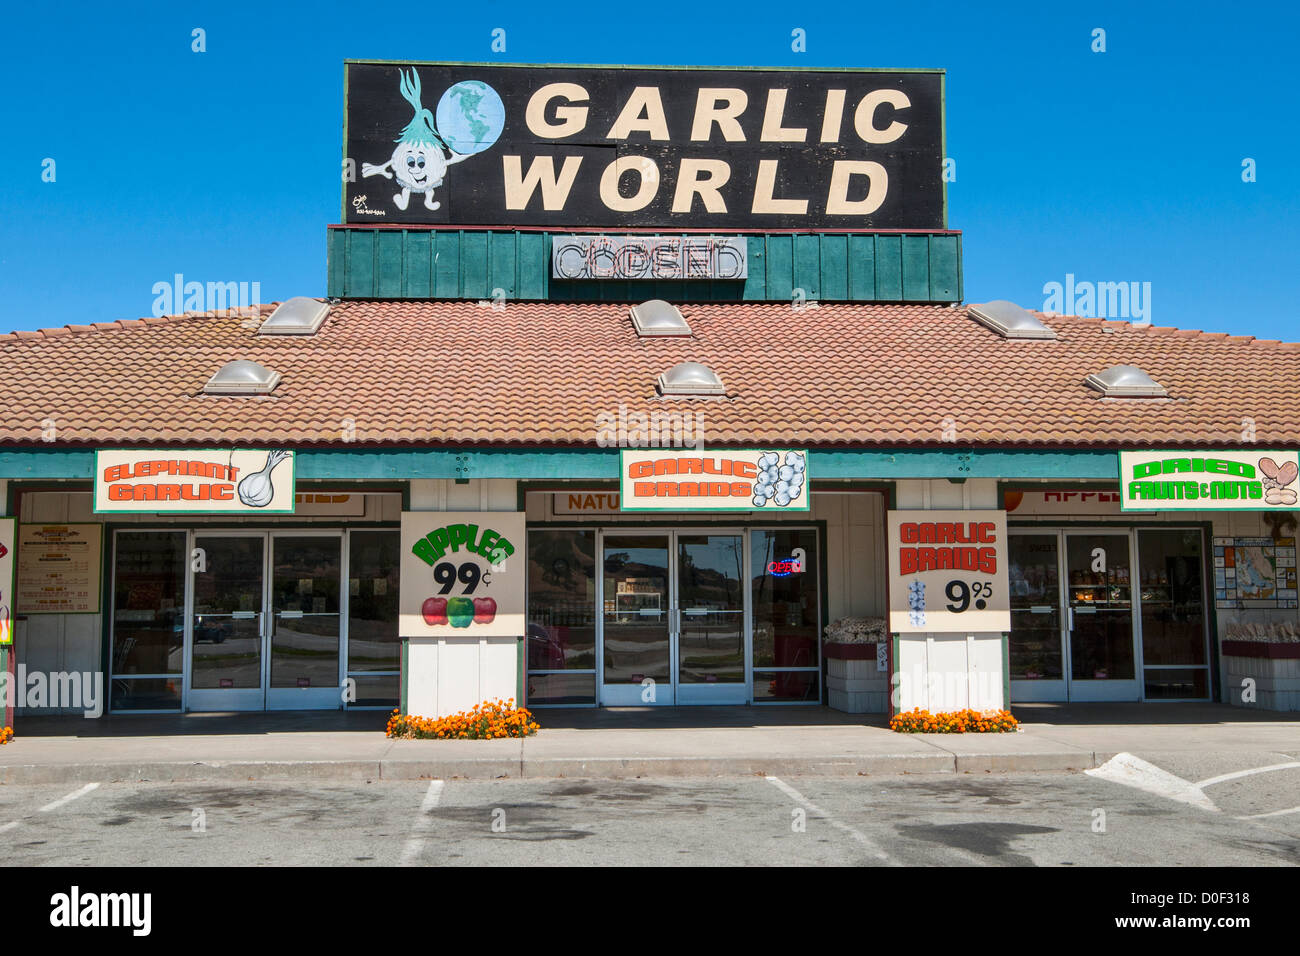 Especialidades gourmet y los productos alimenticios que se venden en esta tienda ubicada en la capital mundial del ajo, Gilroy, California. Foto de stock